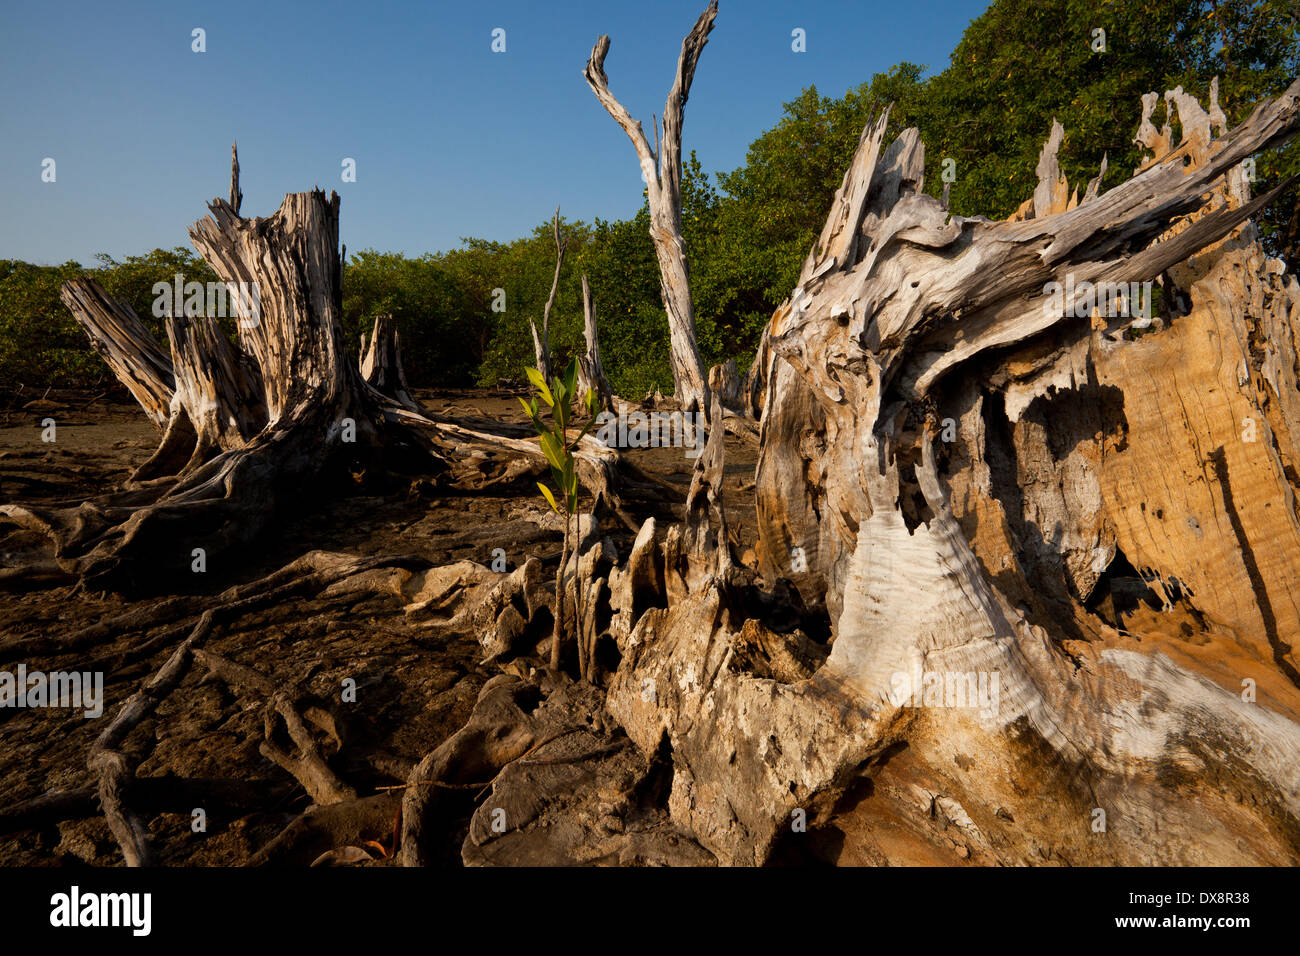 Asciugare tronchi di alberi nella foresta di mangrovie vicino alla costa a Punta Chame sulla costa del Pacifico, provincia di Panama, Repubblica di Panama. Foto Stock